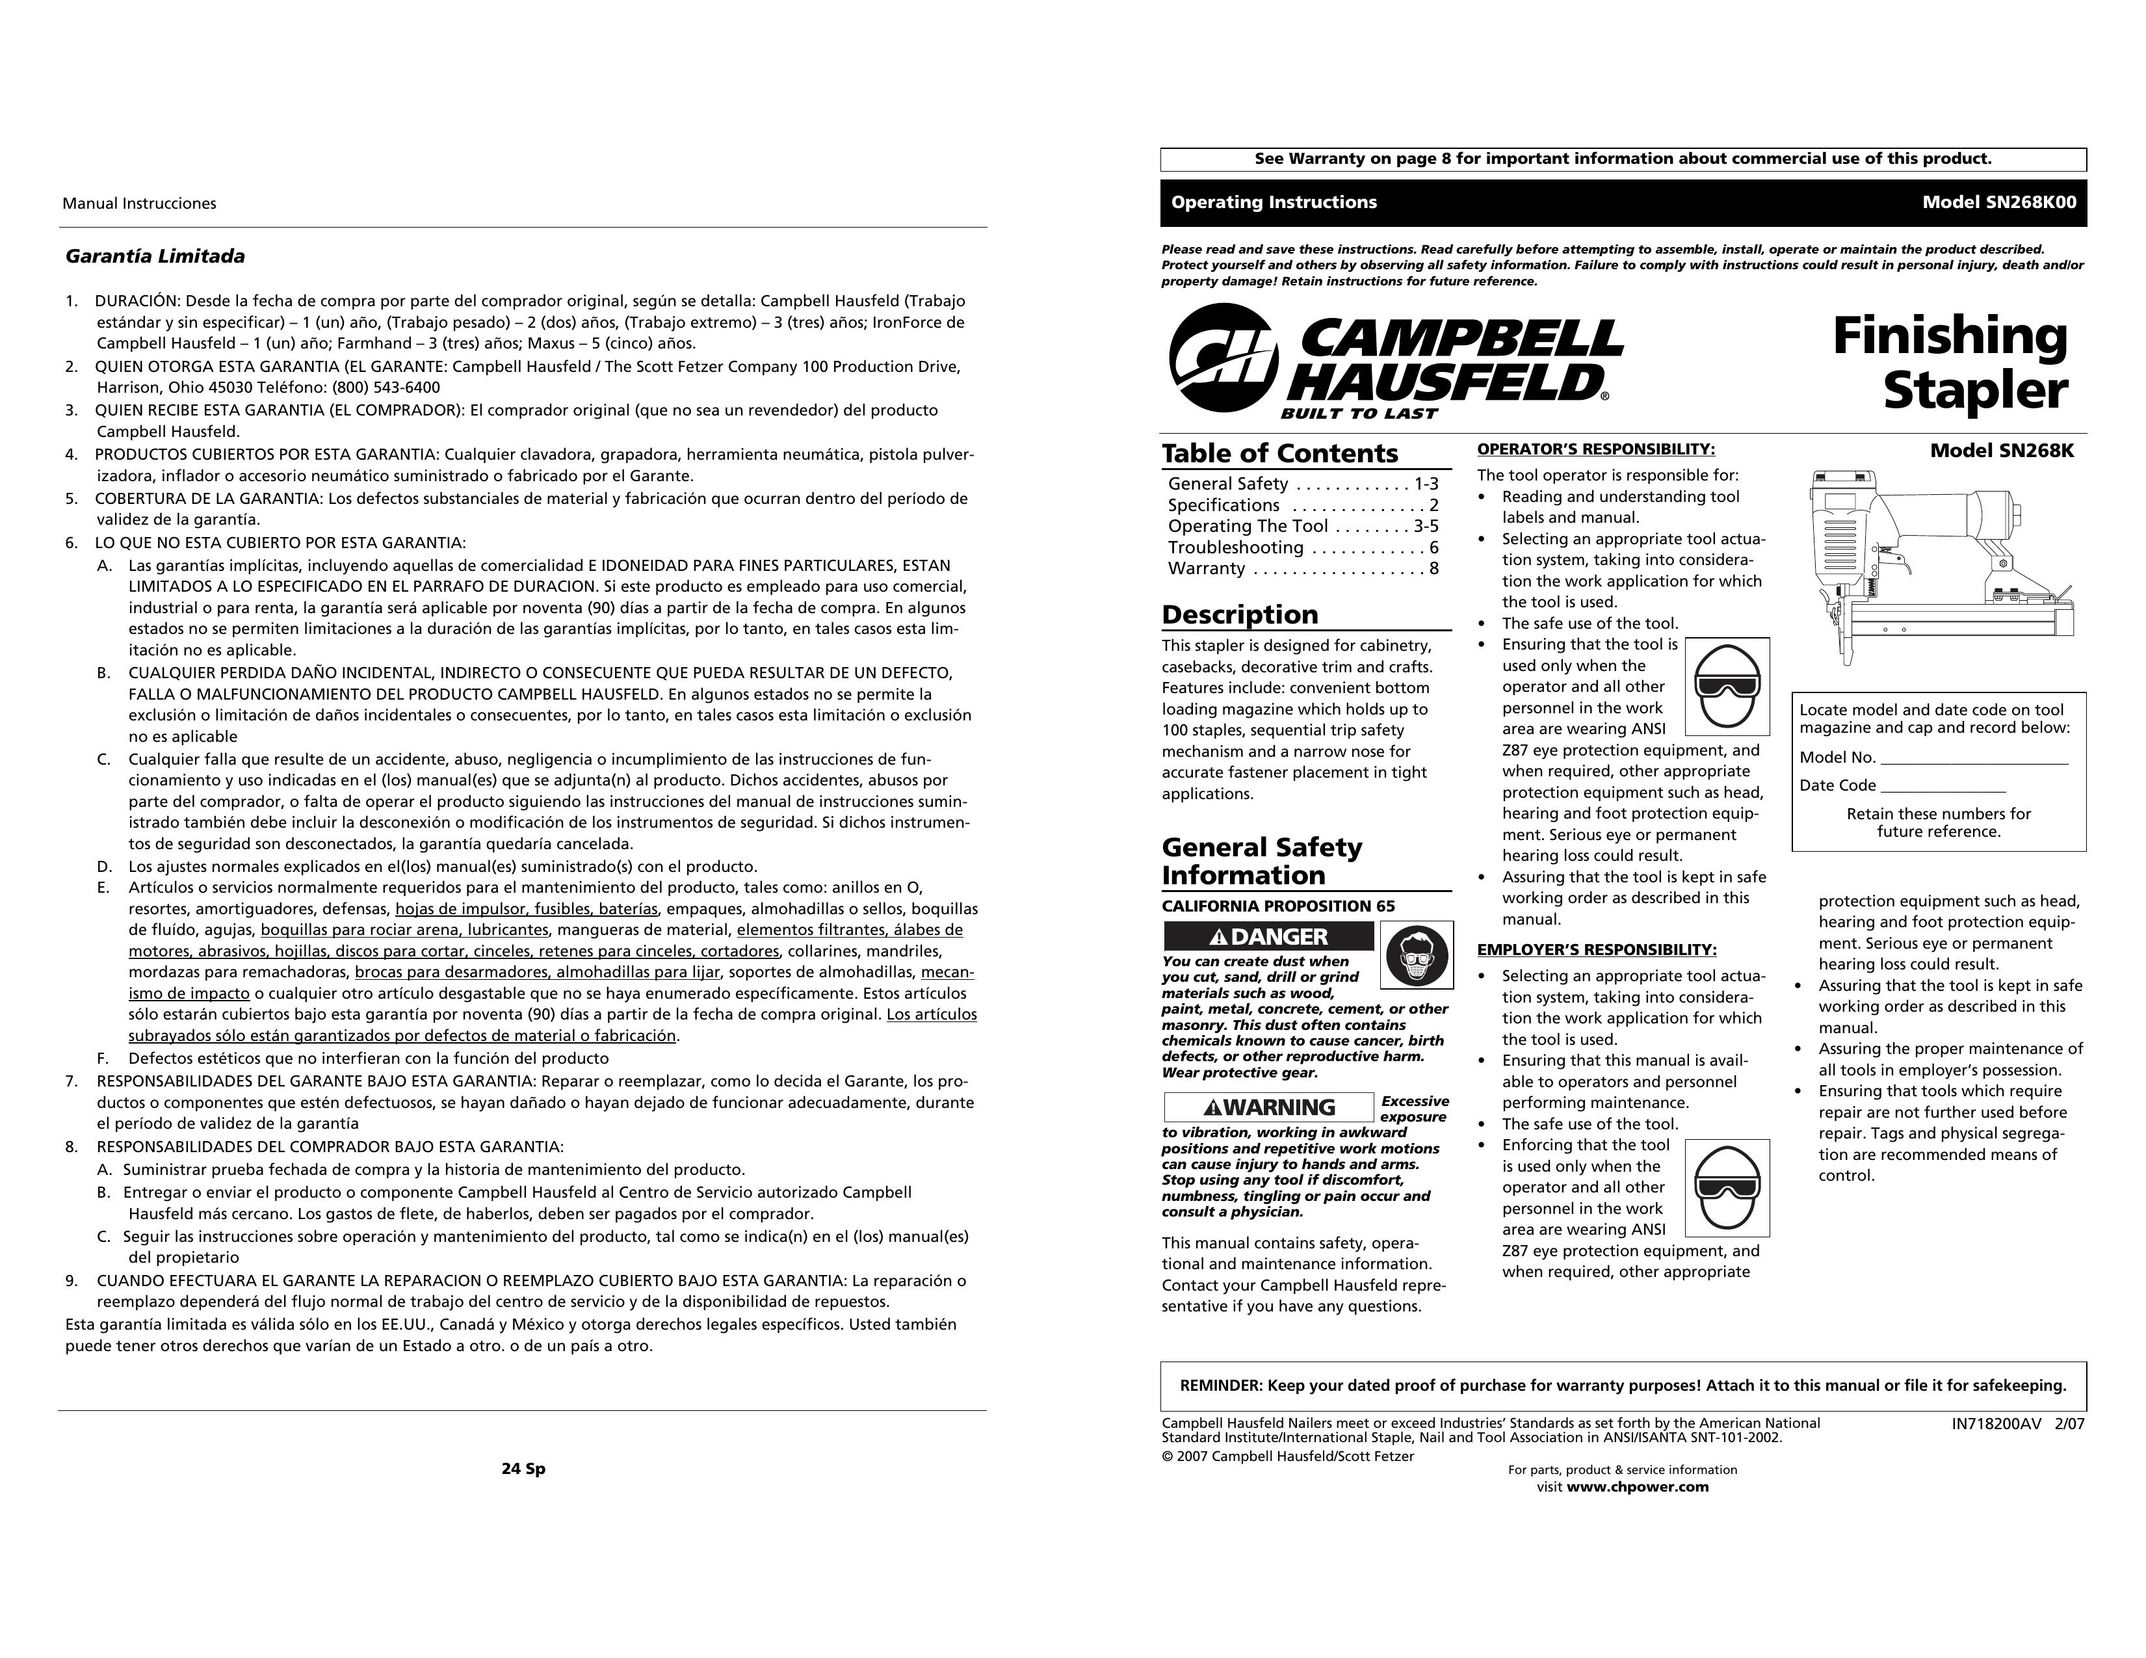 Campbell Hausfeld SN268K00 Staple Gun User Manual